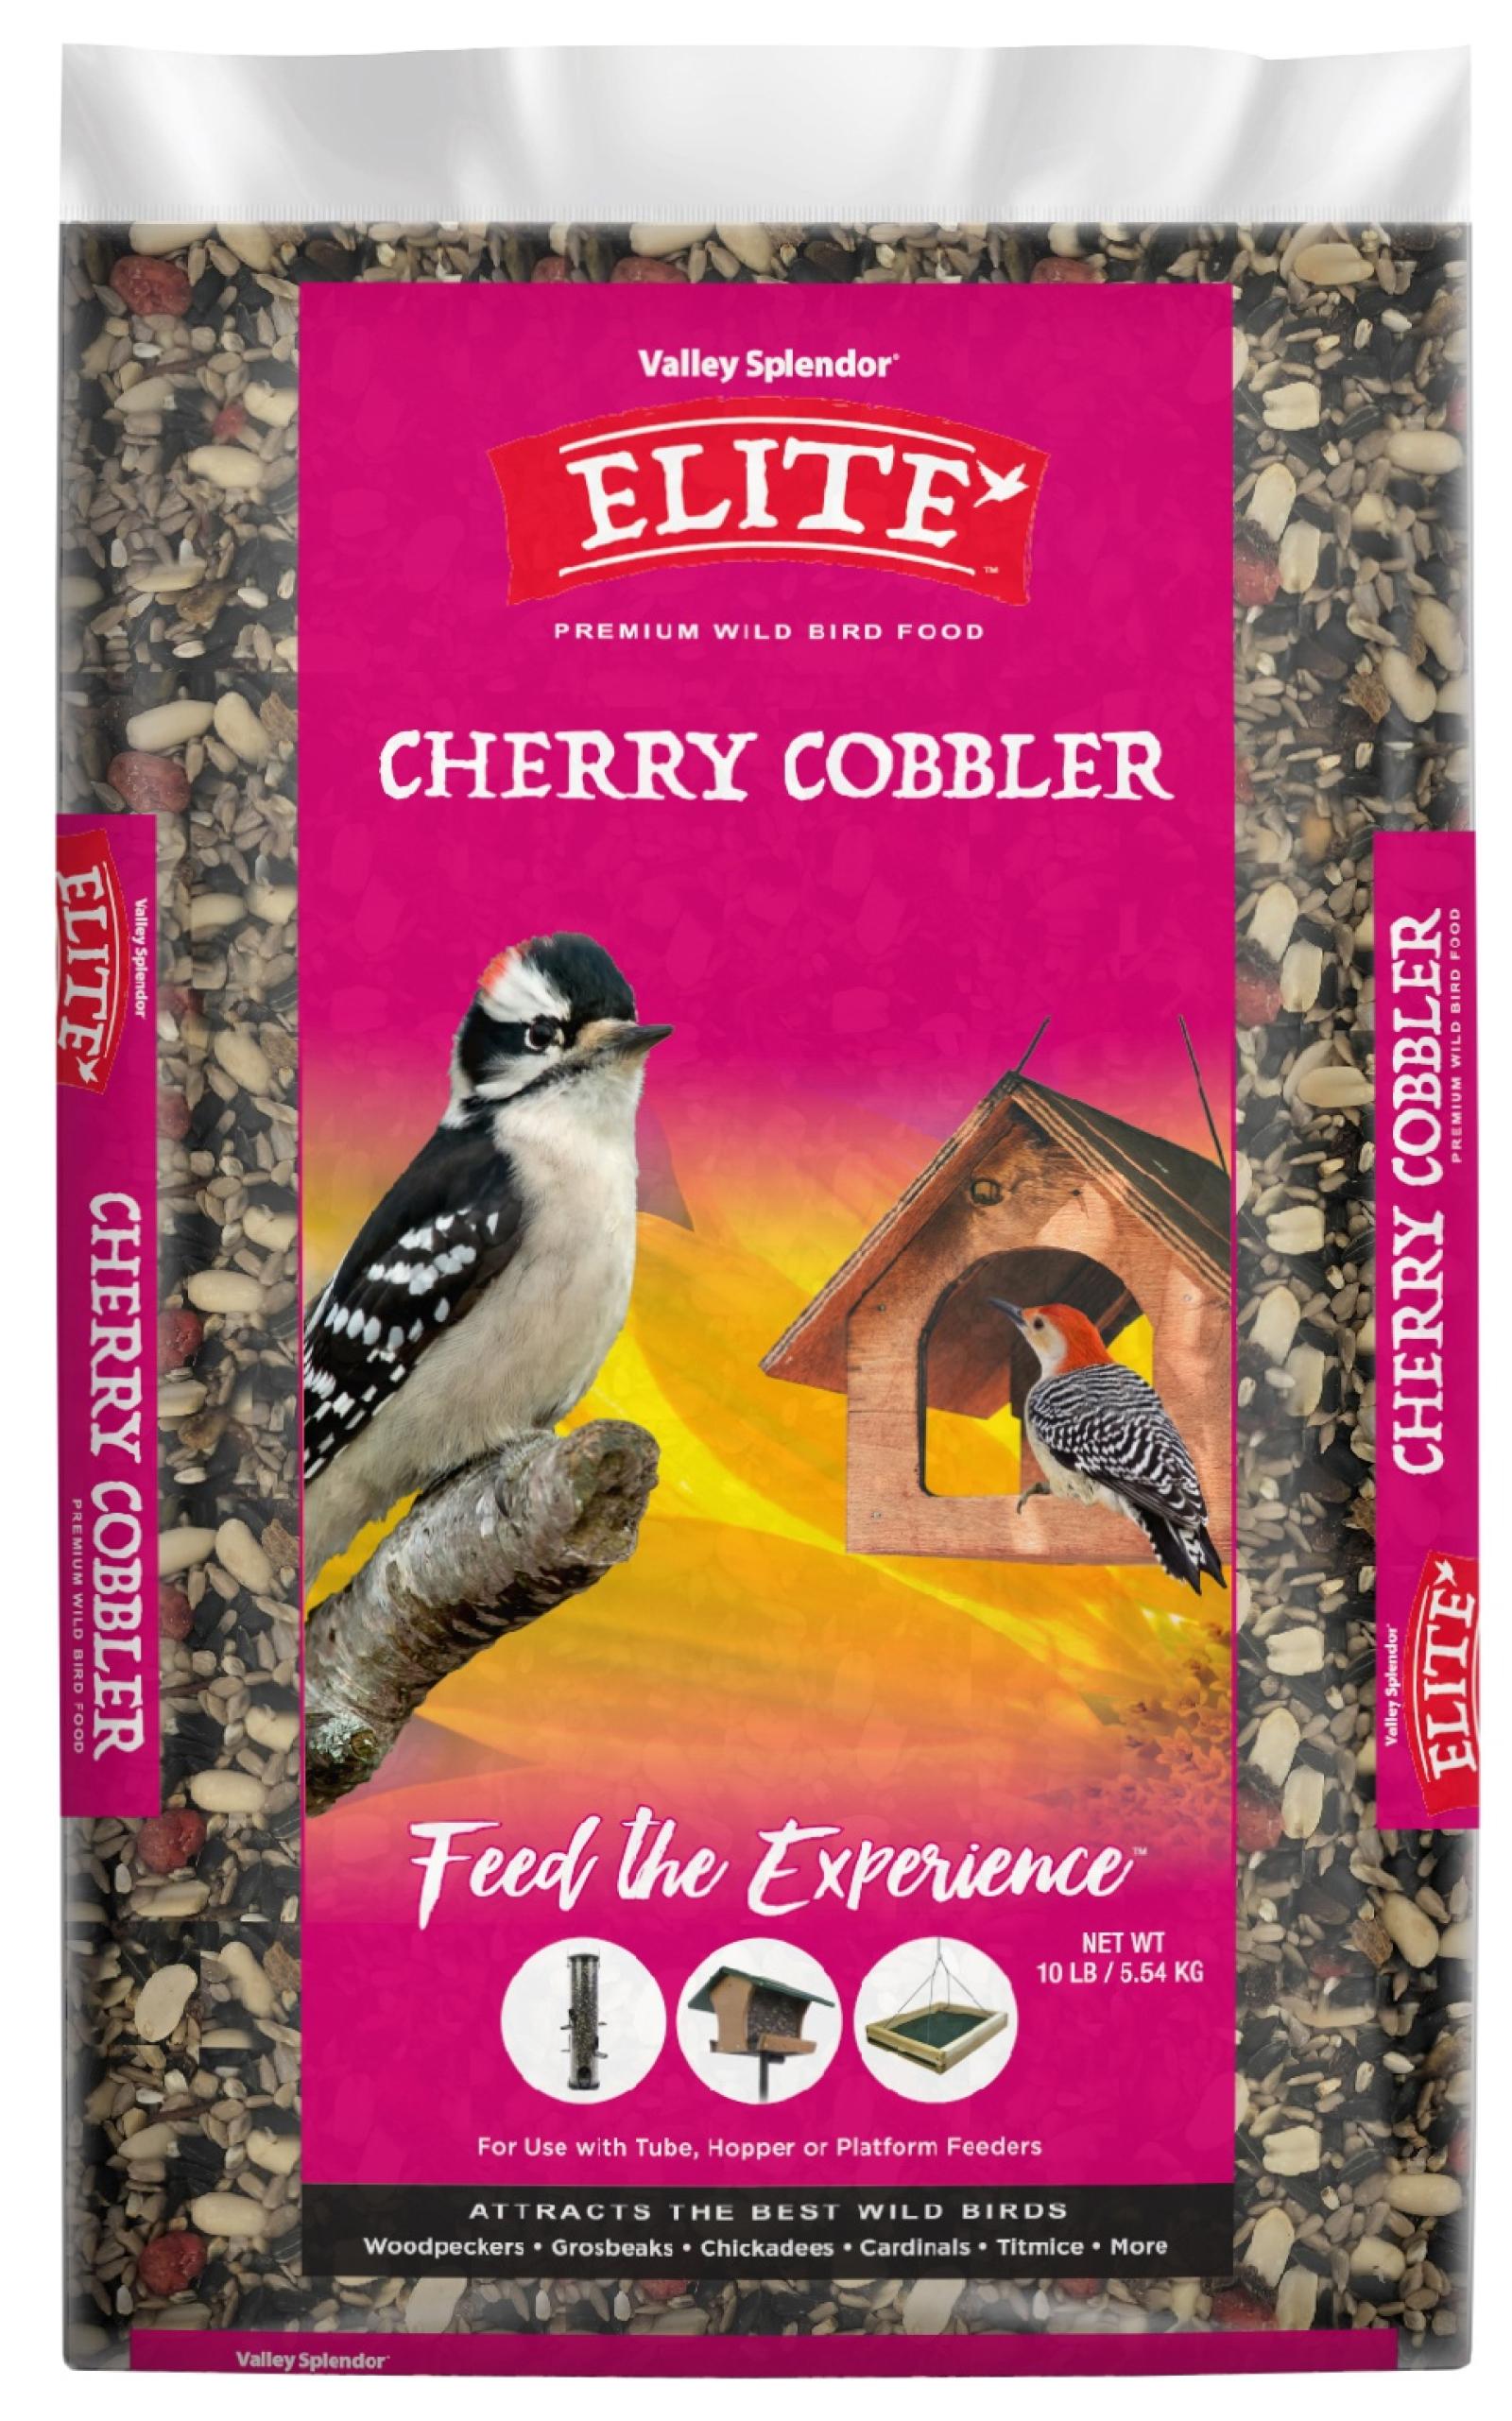 Valley Splendor Elite Cherry Cobbler